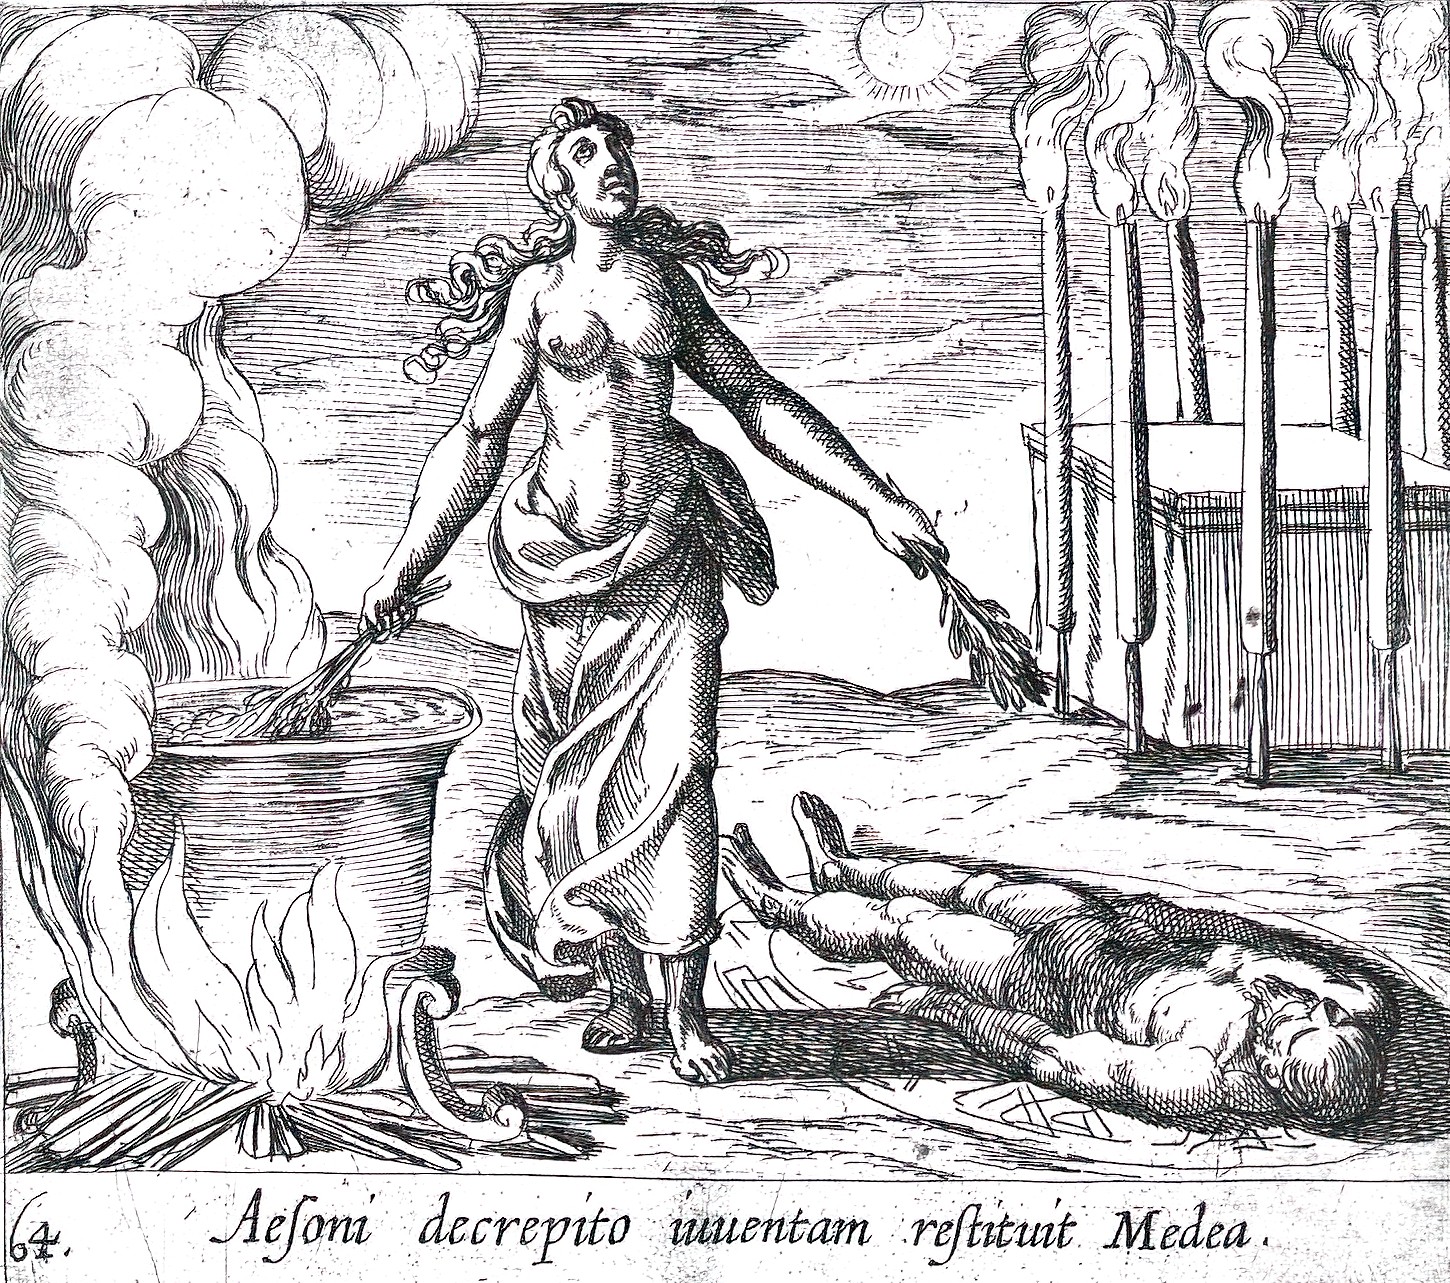 Medea herstelt de jeugd van Aeson, Antonio Tempesta, 1606-cauldron